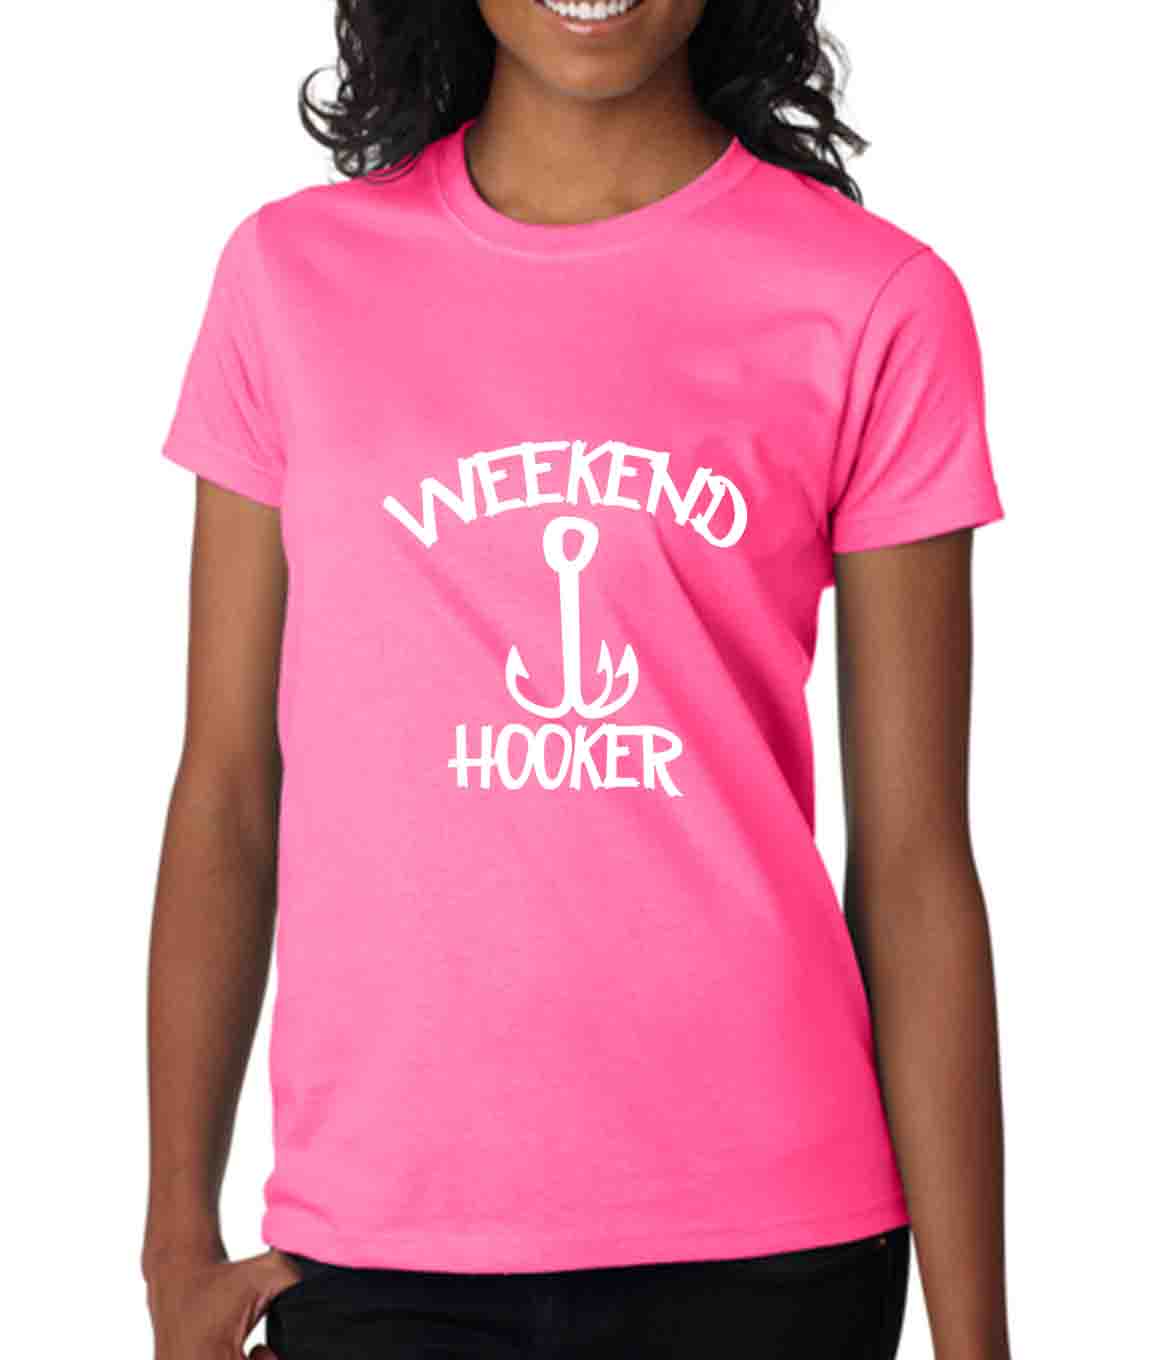 Women Weekend Hooker Adult Humor Fishing Ladies T- Shirt | eBay